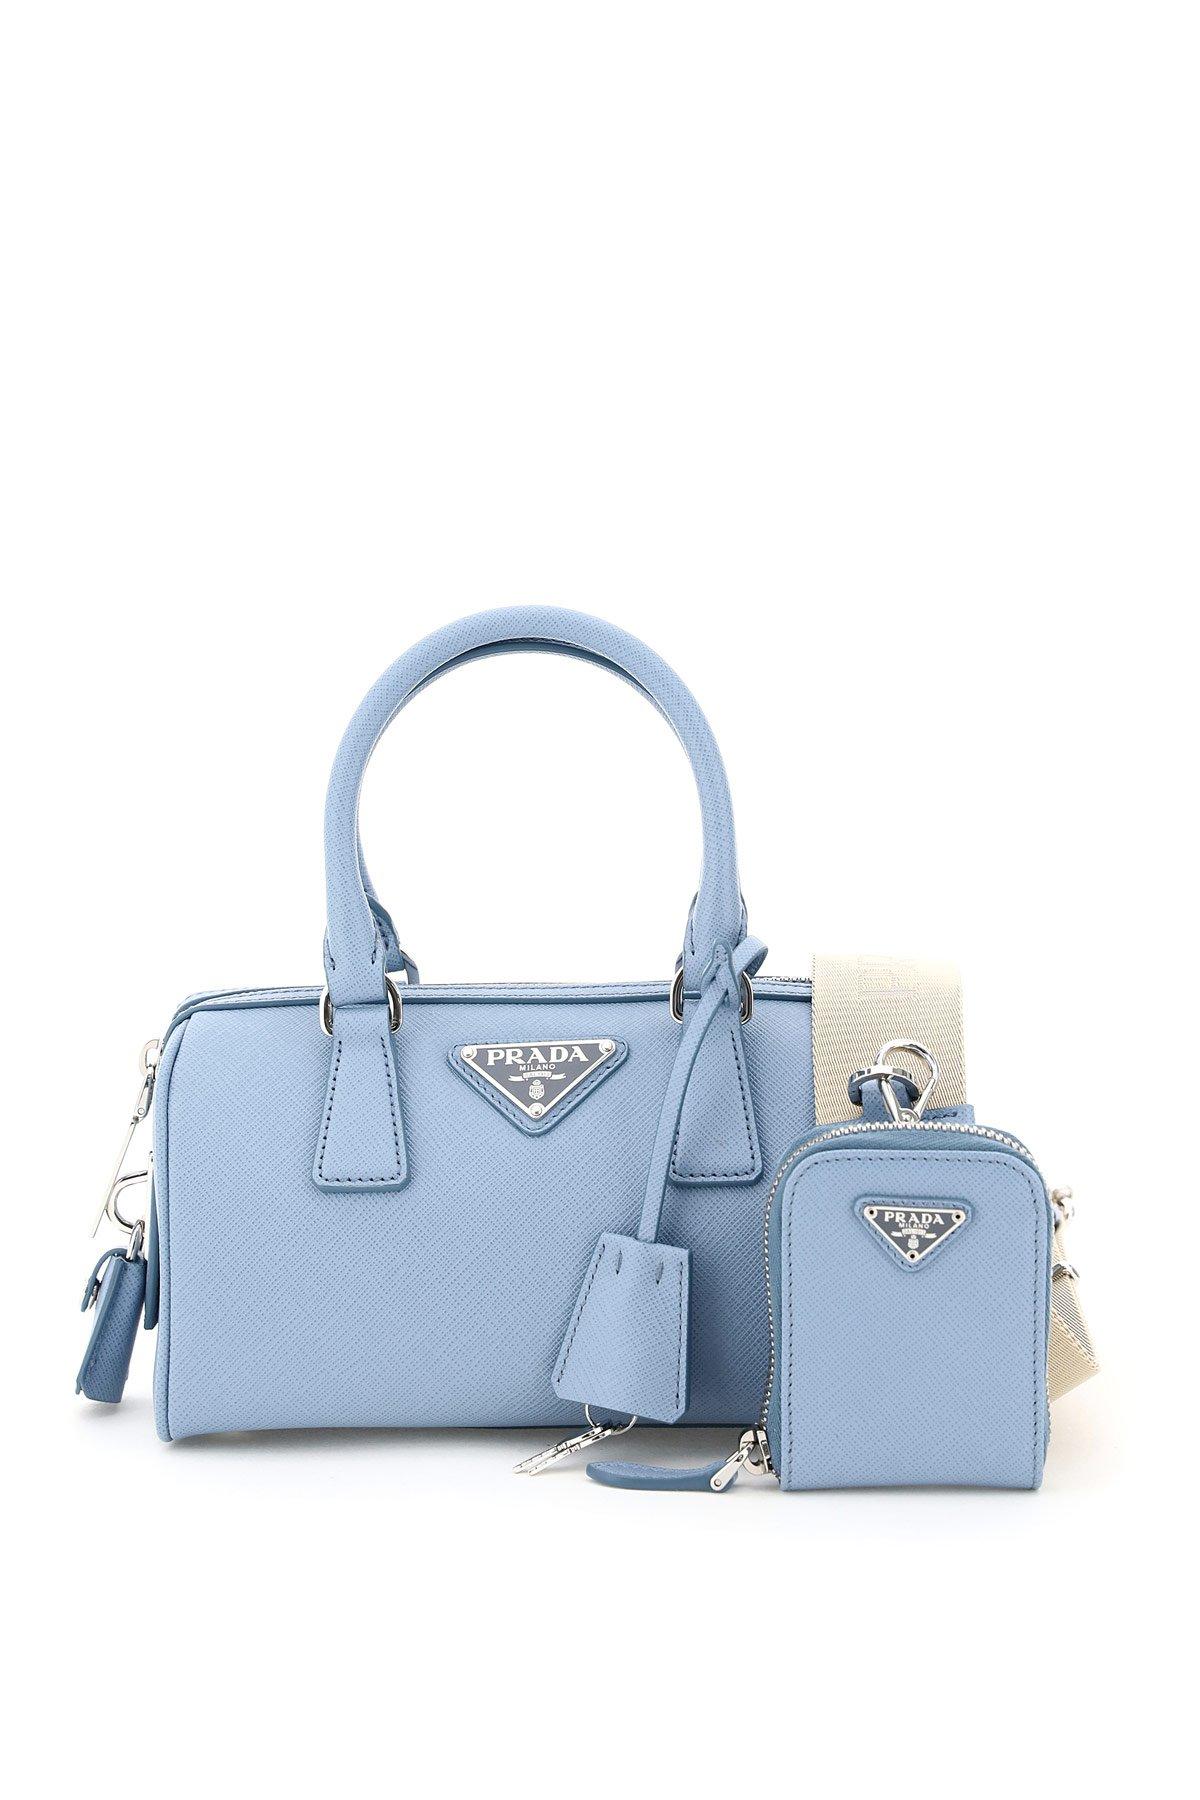 Prada Logo Plaque Saffiano Top Handle Bag in Blue | Lyst Canada